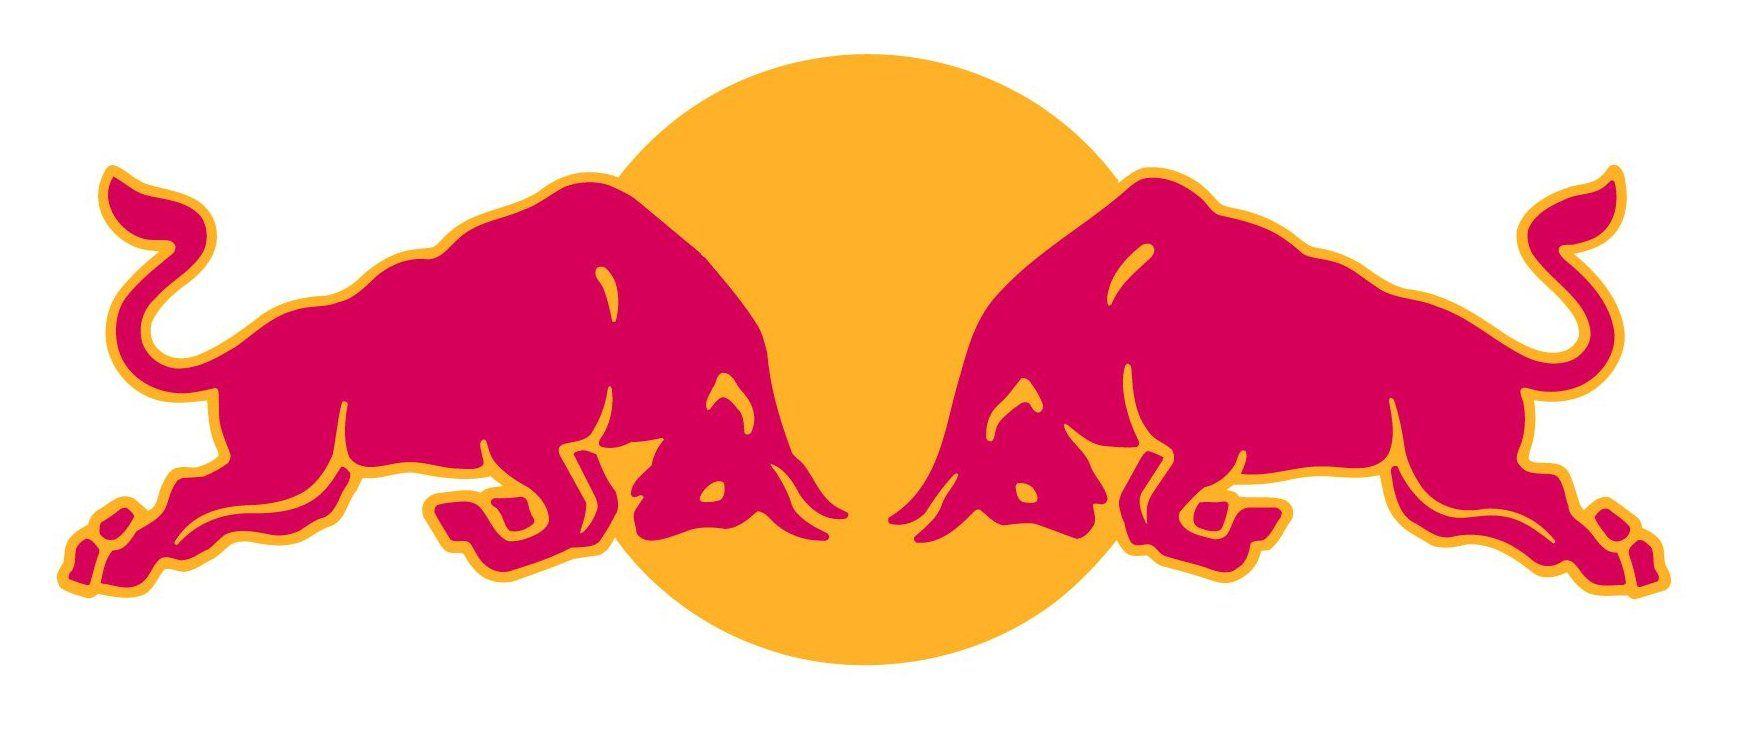 Red Bull Logo - Red Bull #logo | Ethos Pathos Logo | Logos, Red bull, Bull logo